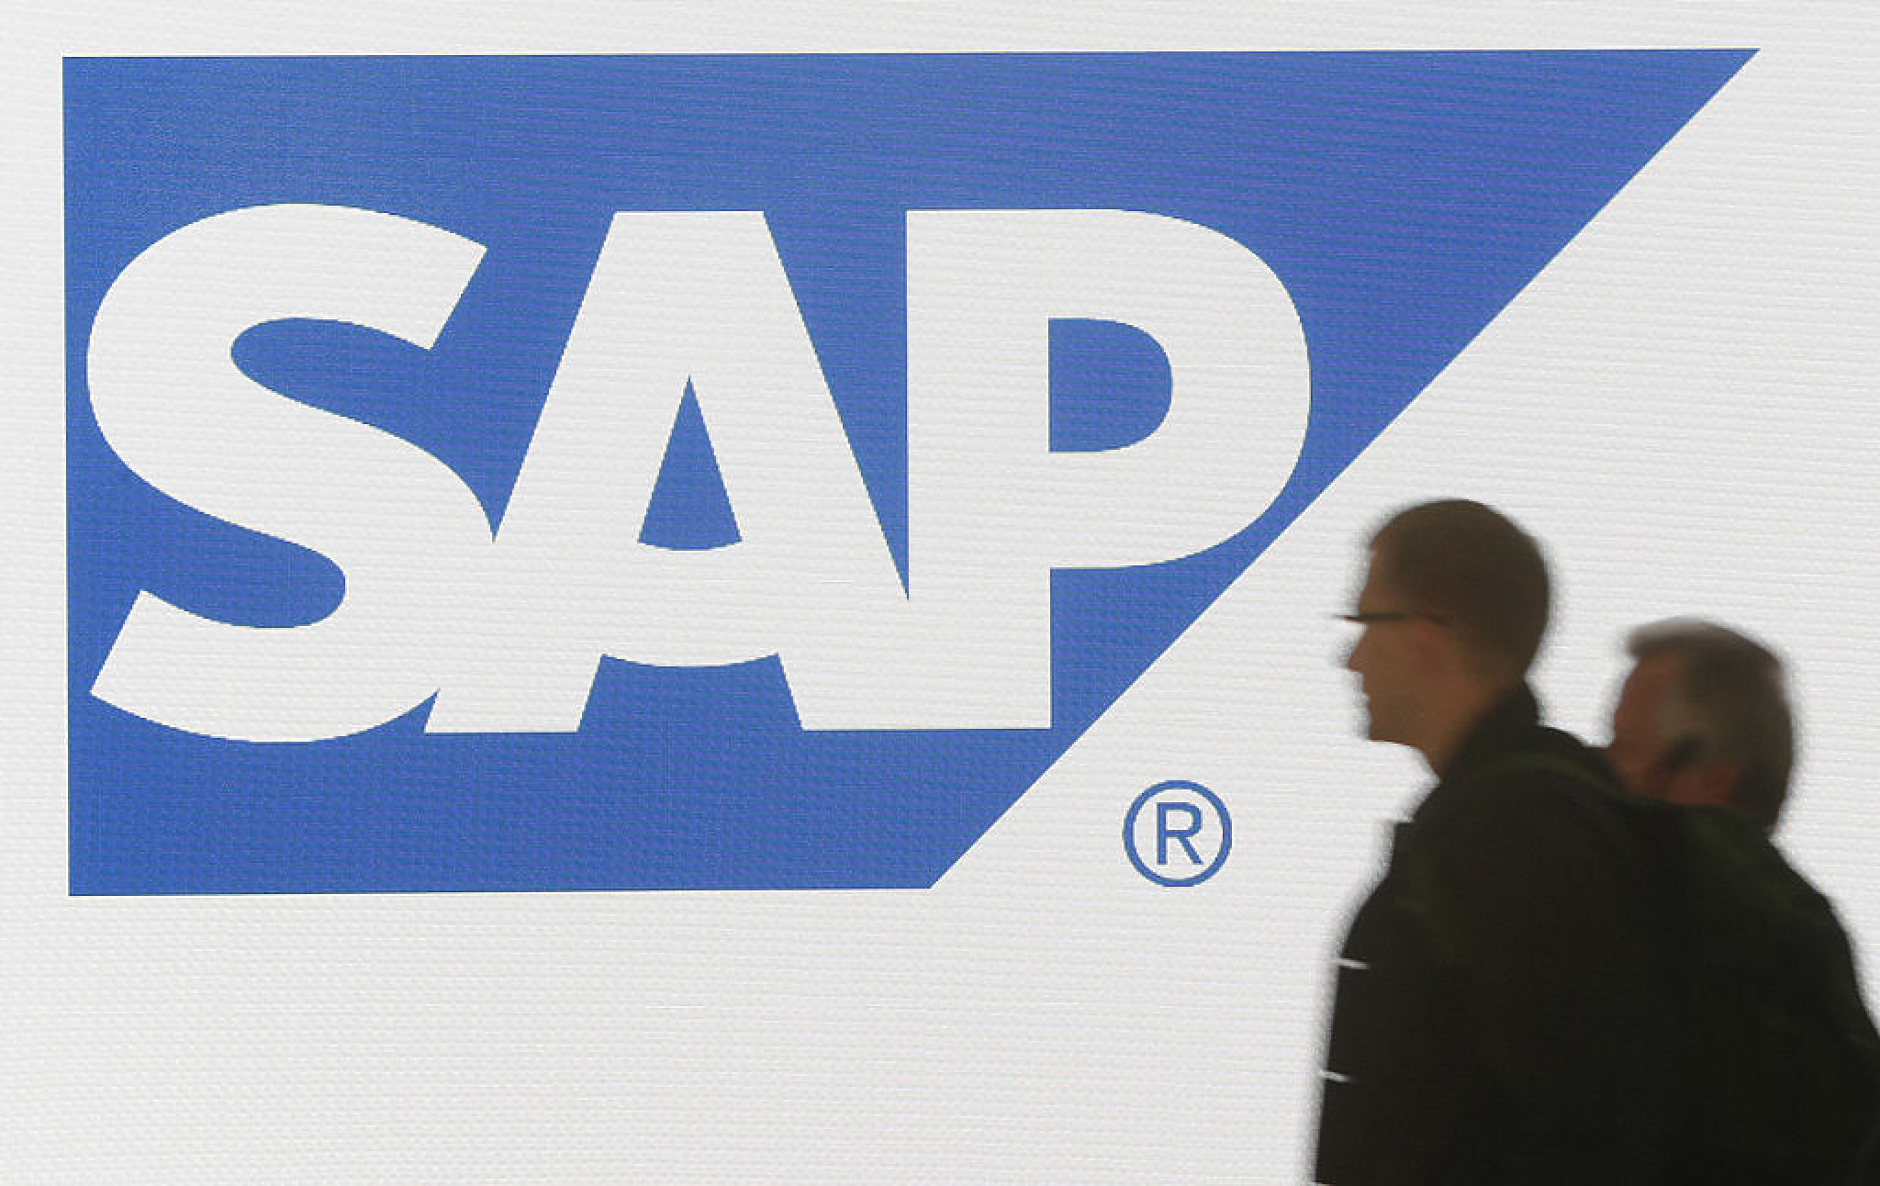 SAP се съгласи да продаде дела си в Qualtrics за 7,7 млрд. долара